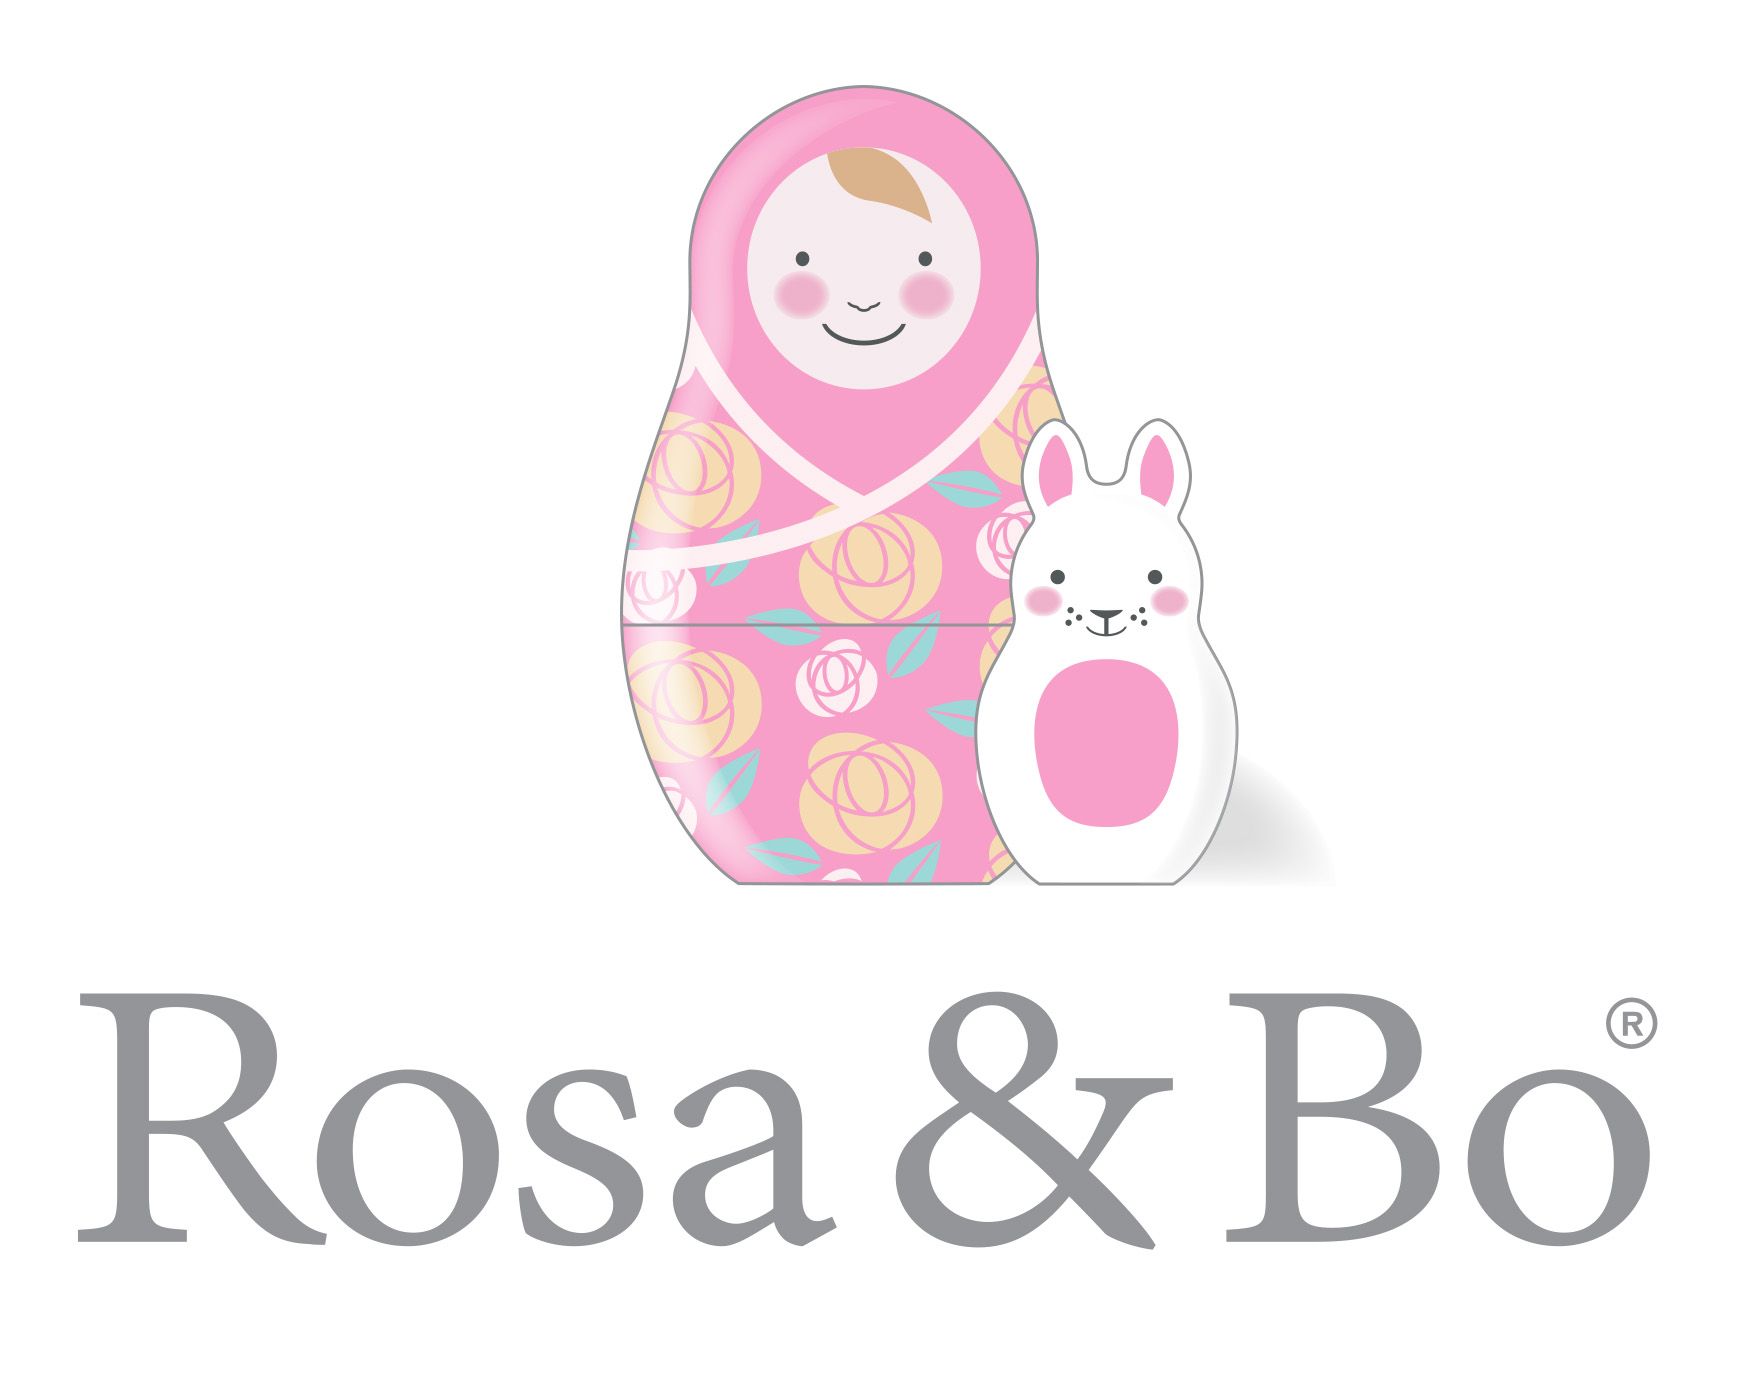 Rosa & Bo